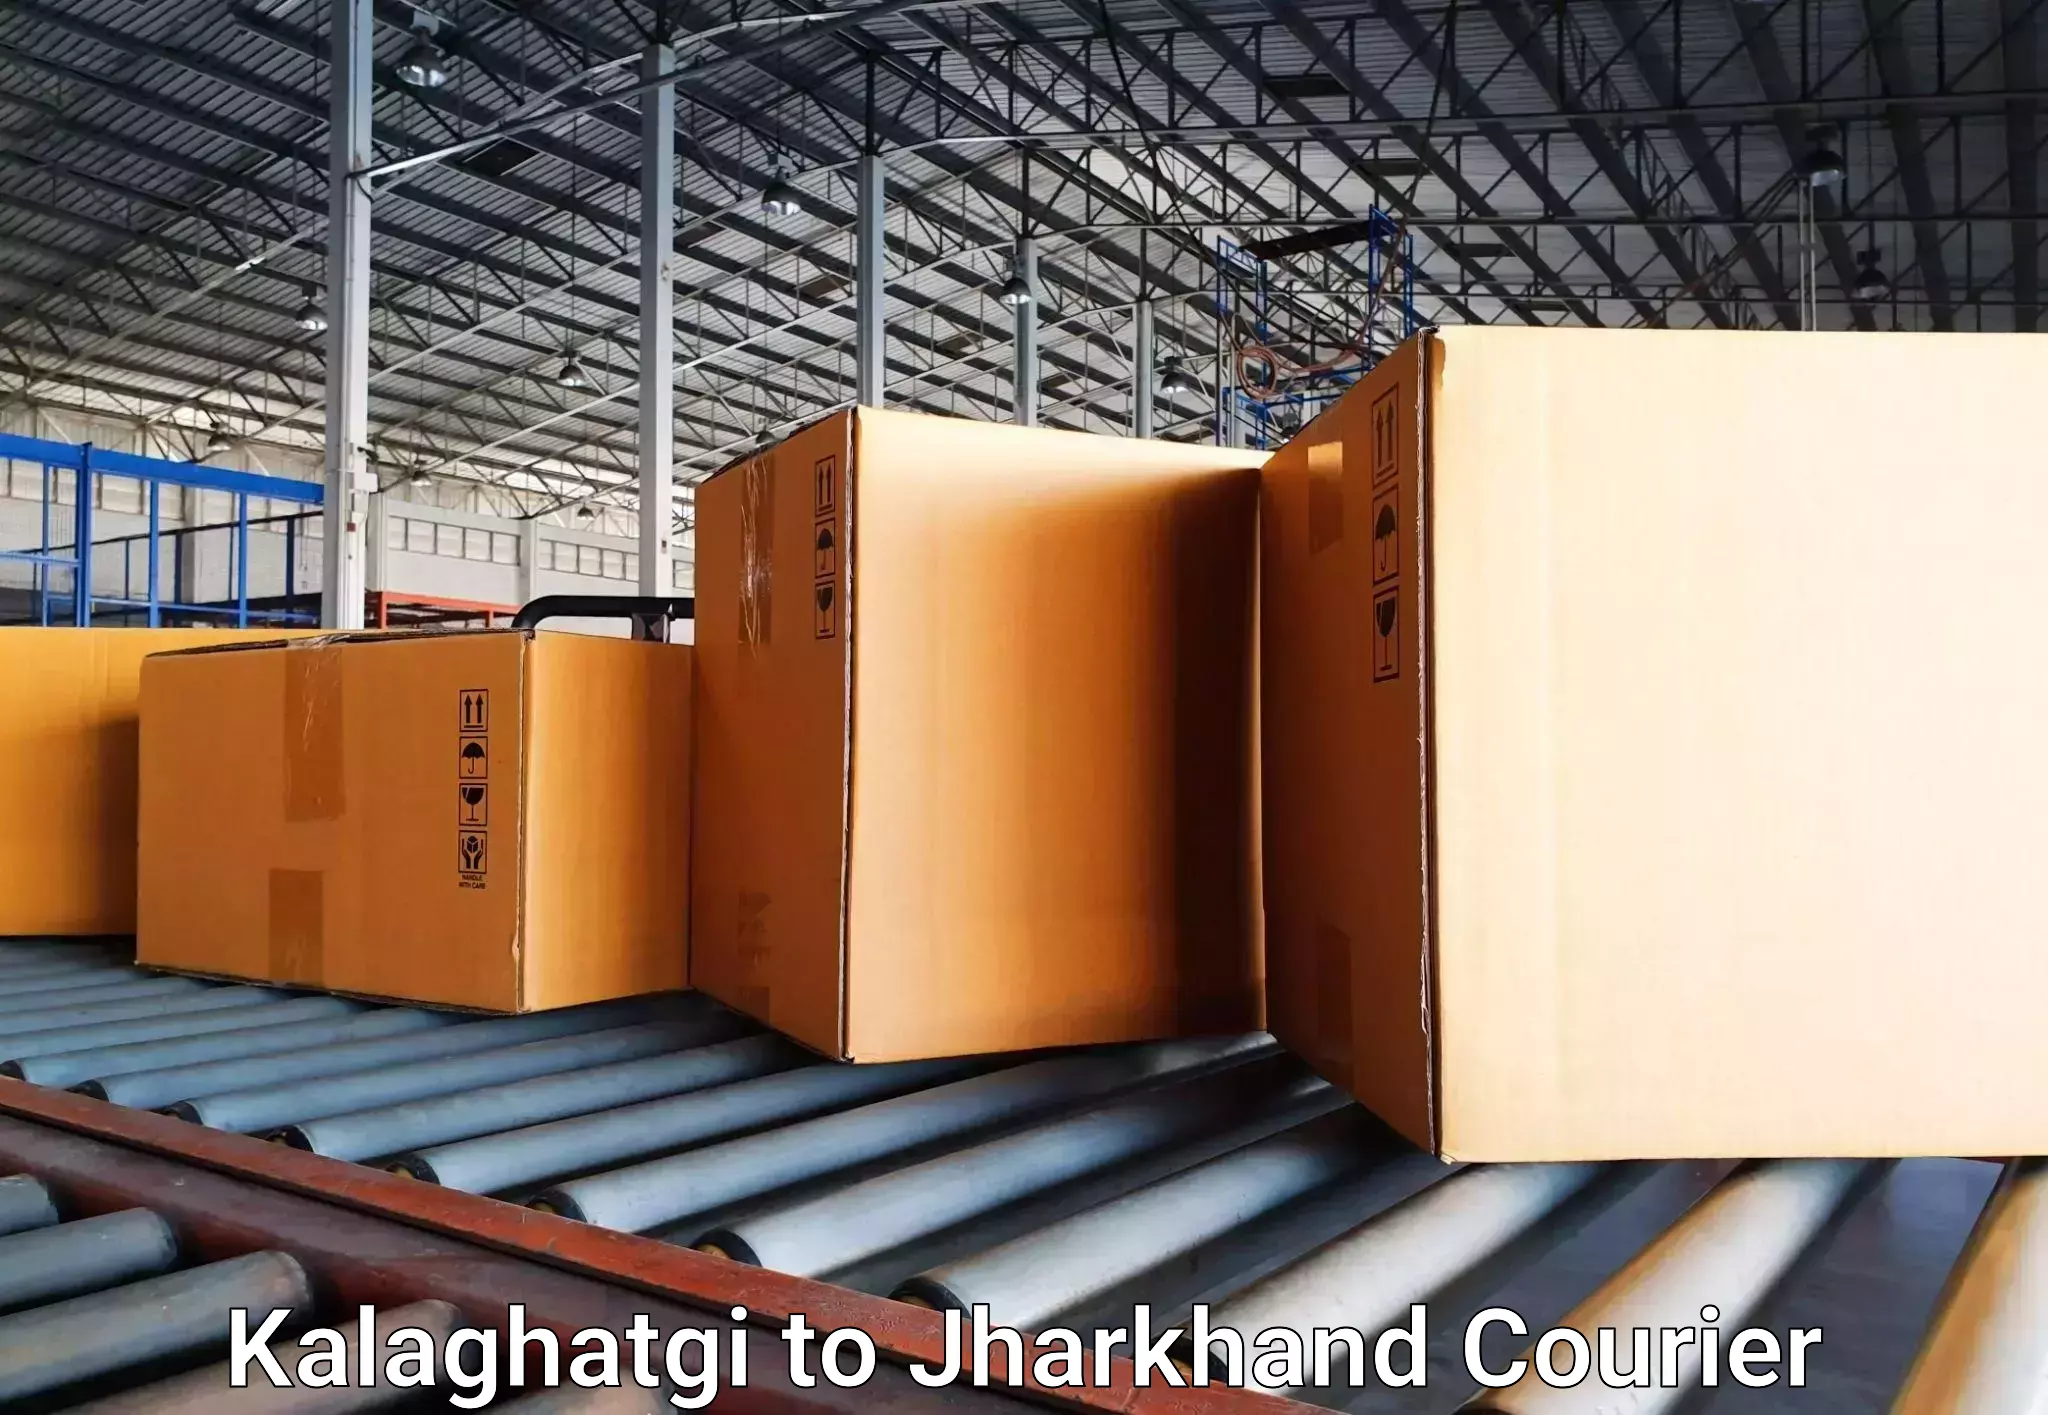 Luggage shipment specialists Kalaghatgi to Daltonganj